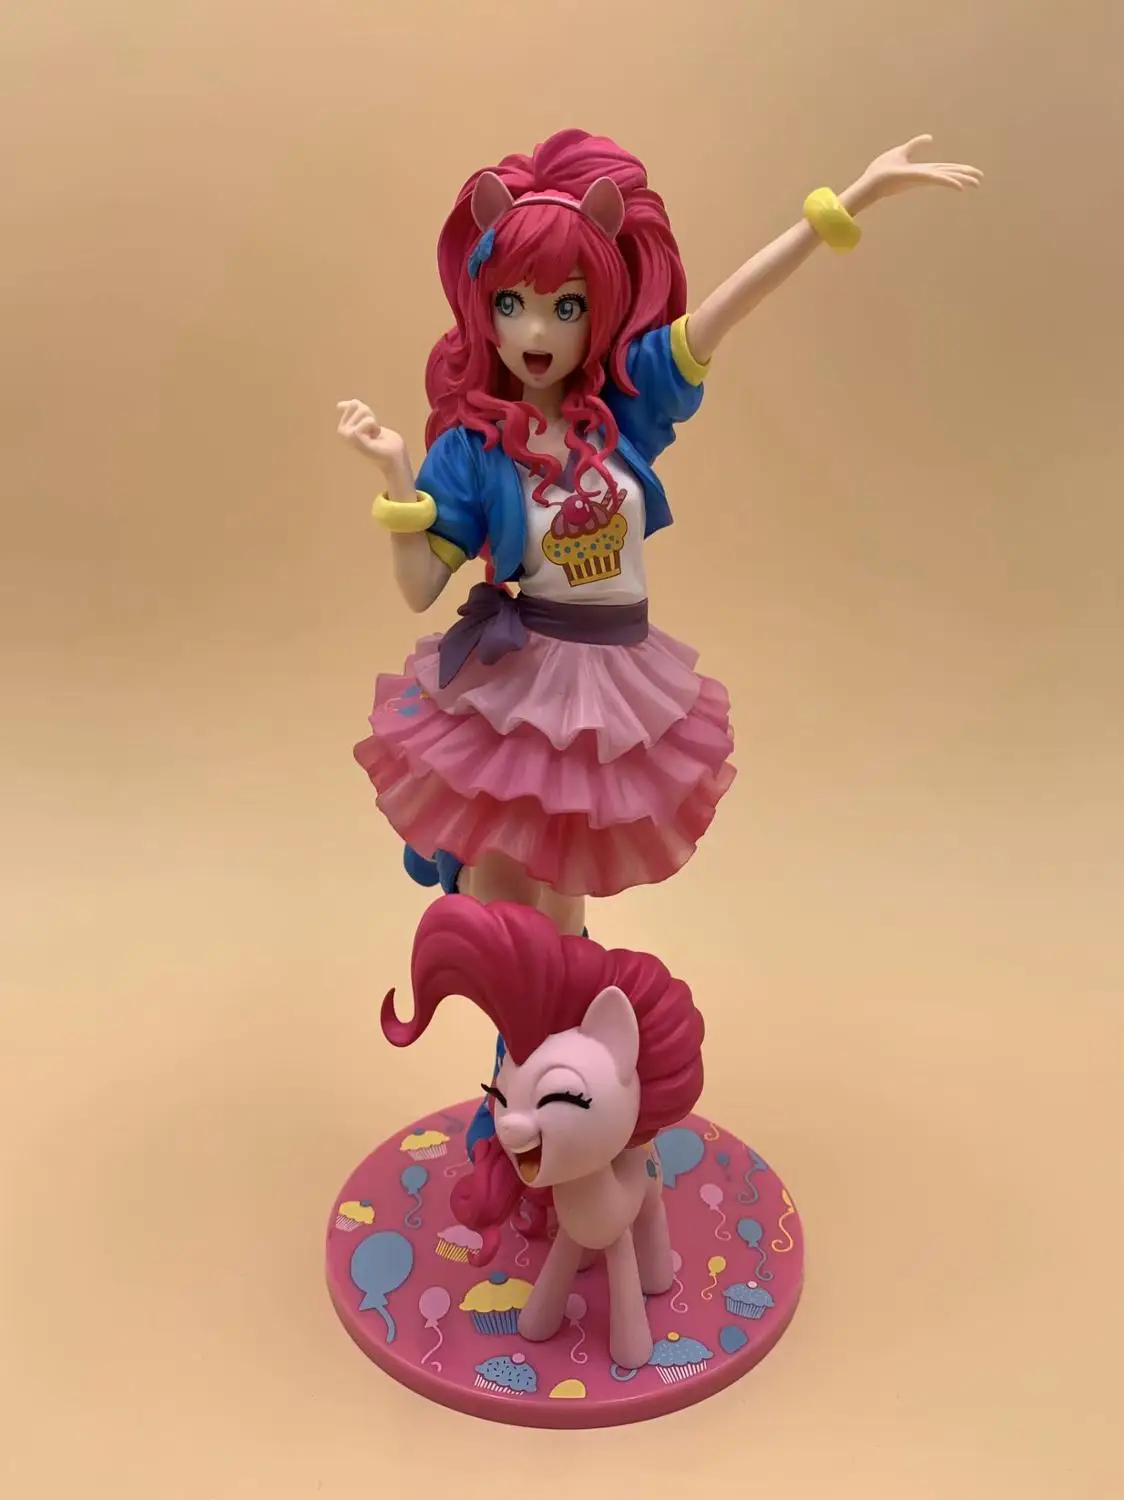 MEW jeu mon petit poney Bishoujo Pinkie pie PVC Figure modèle jouet poupée Collection modèle jouets cadeau pour enfants anniversaire